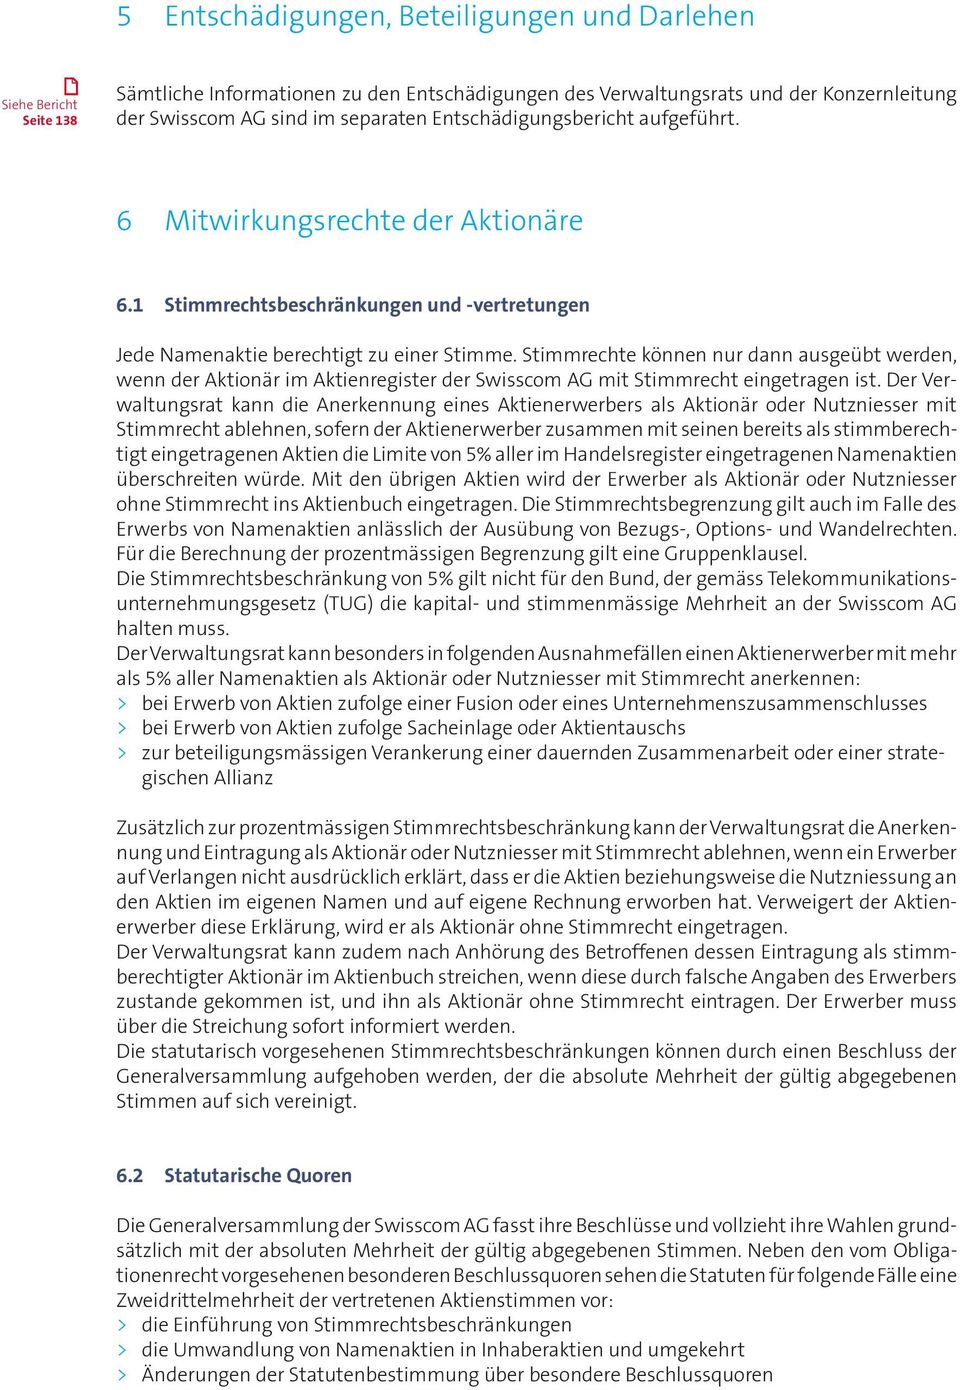 Stimmrechte können nur dann ausgeübt werden, wenn der Aktionär im Aktienregister der Swisscom AG mit Stimmrecht eingetragen ist.